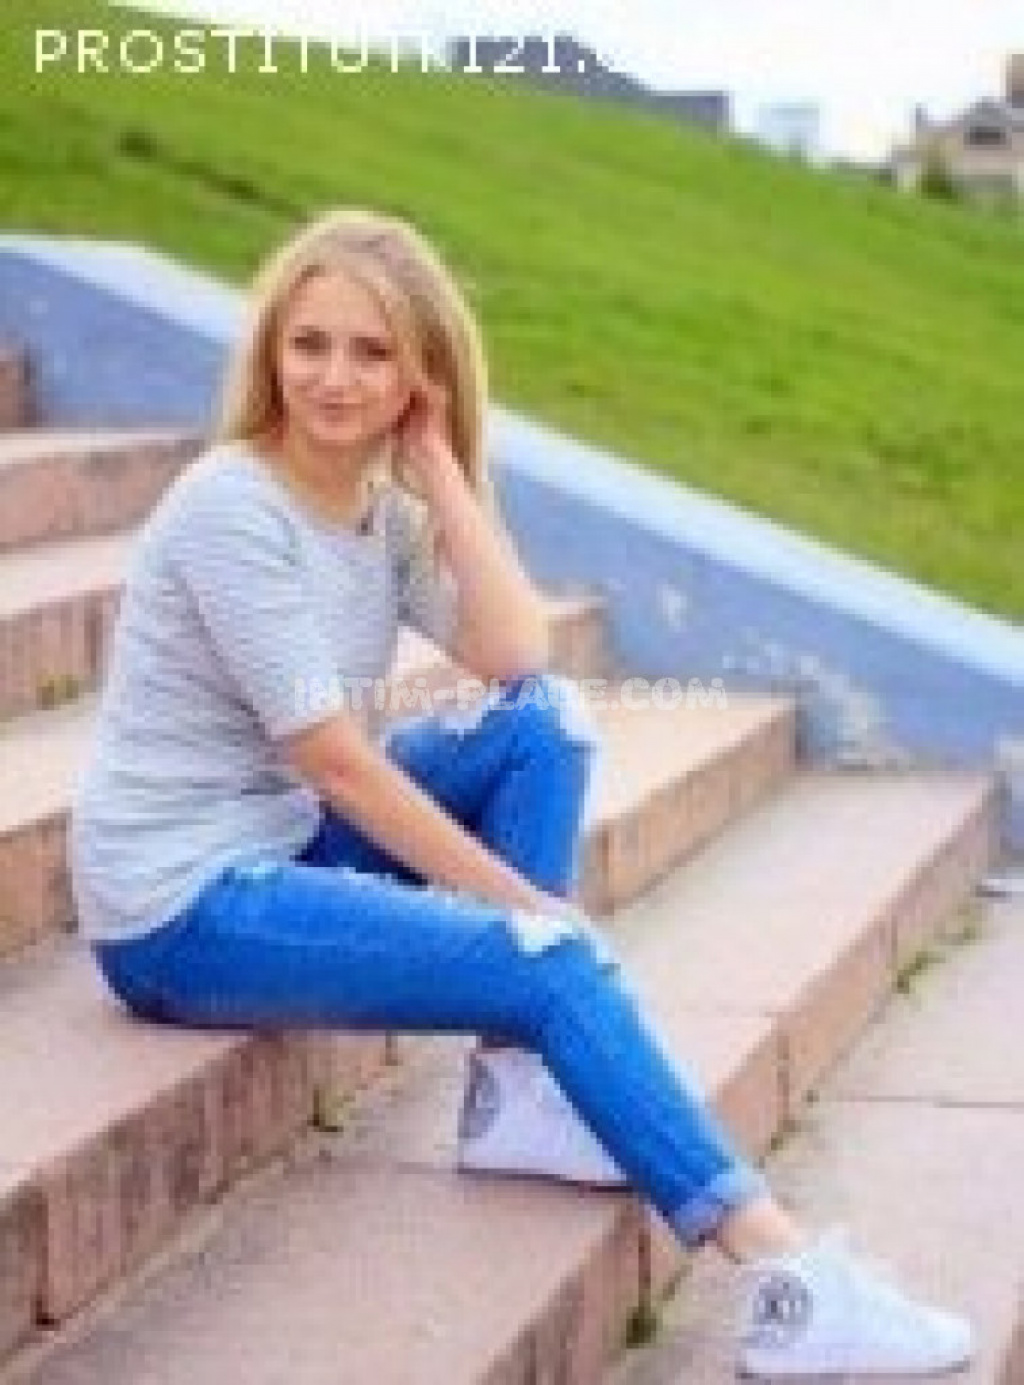 Боня: Проститутка-индивидуалка в Воронеже